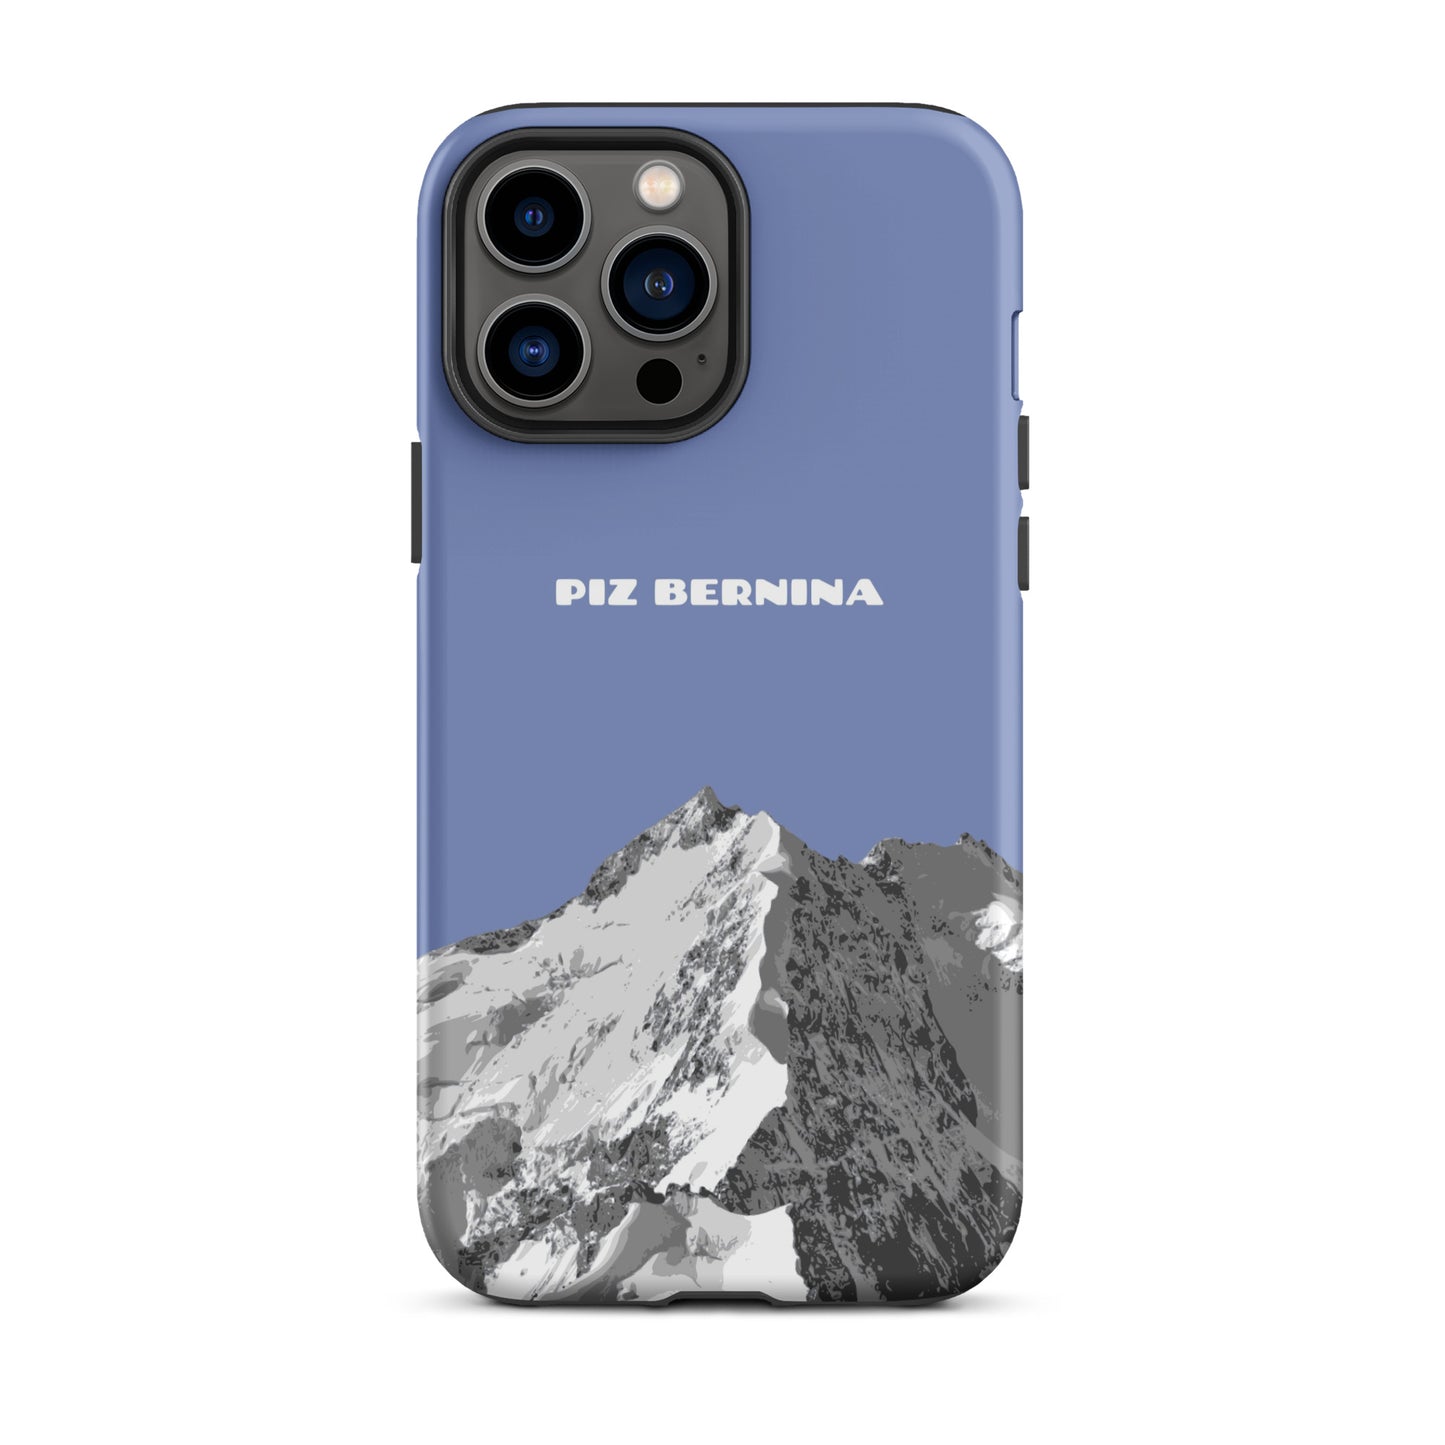 Hülle für das iPhone 13 Pro Max von Apple in der Farbe Pastellblau, dass den Piz Bernina in Graubünden zeigt.